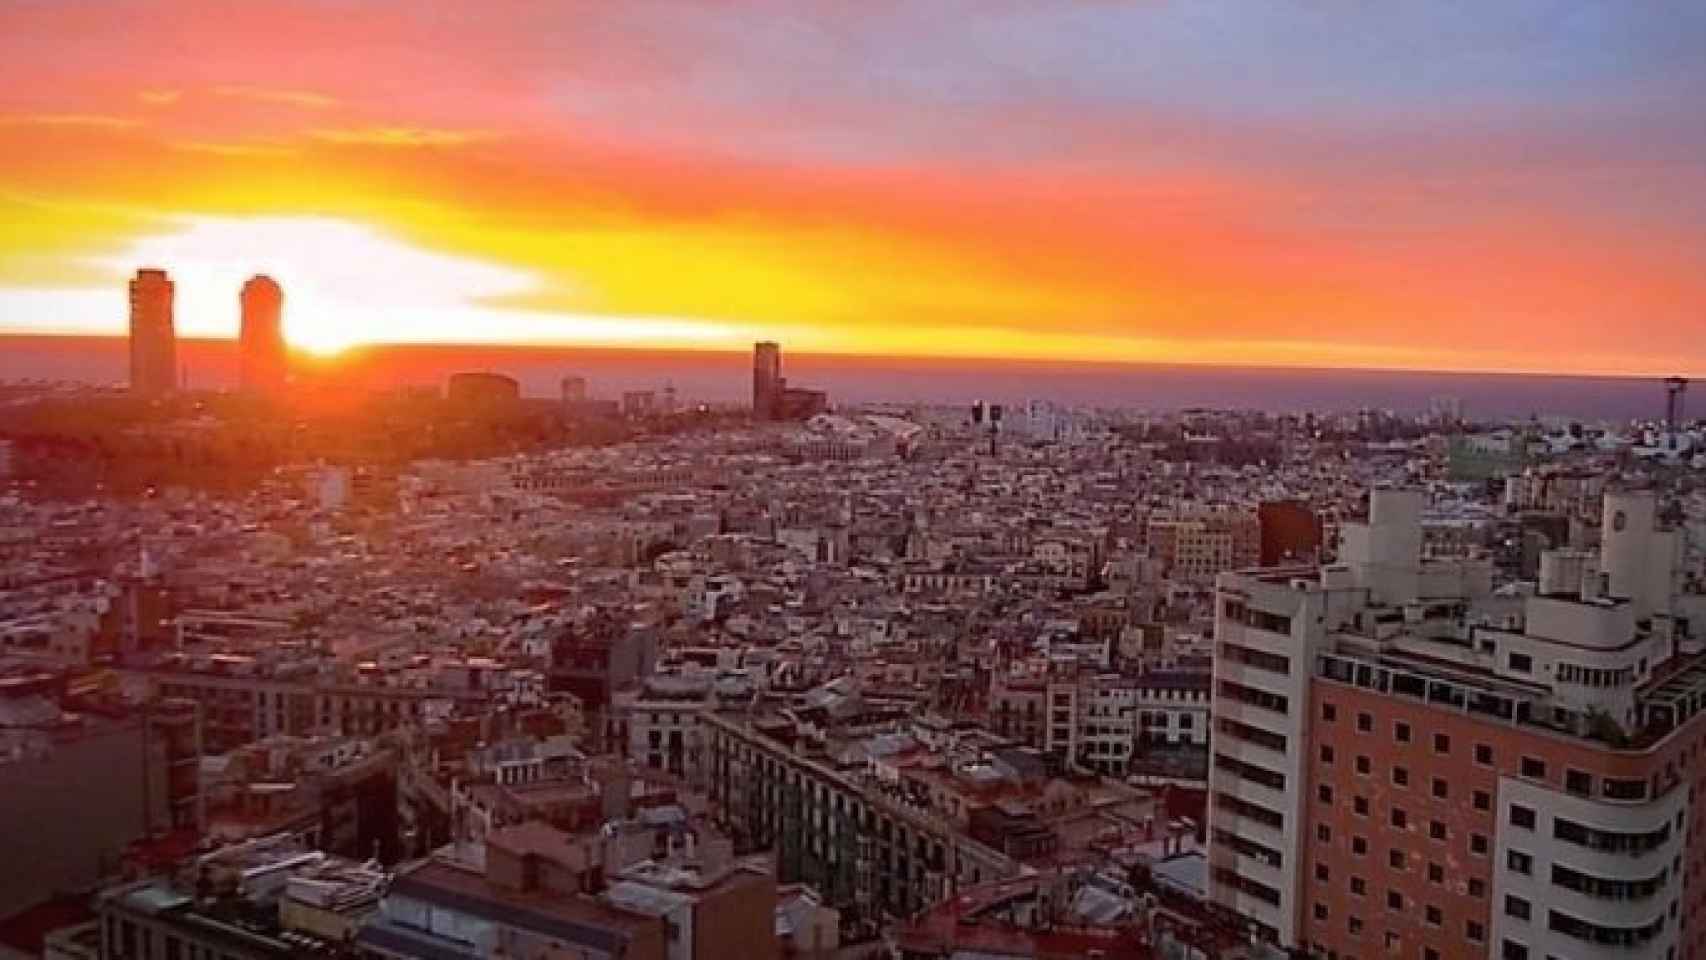 Vistas del primer mirador urbano de Barcelona durante el atardecer / UNLIMITED BARCELONA